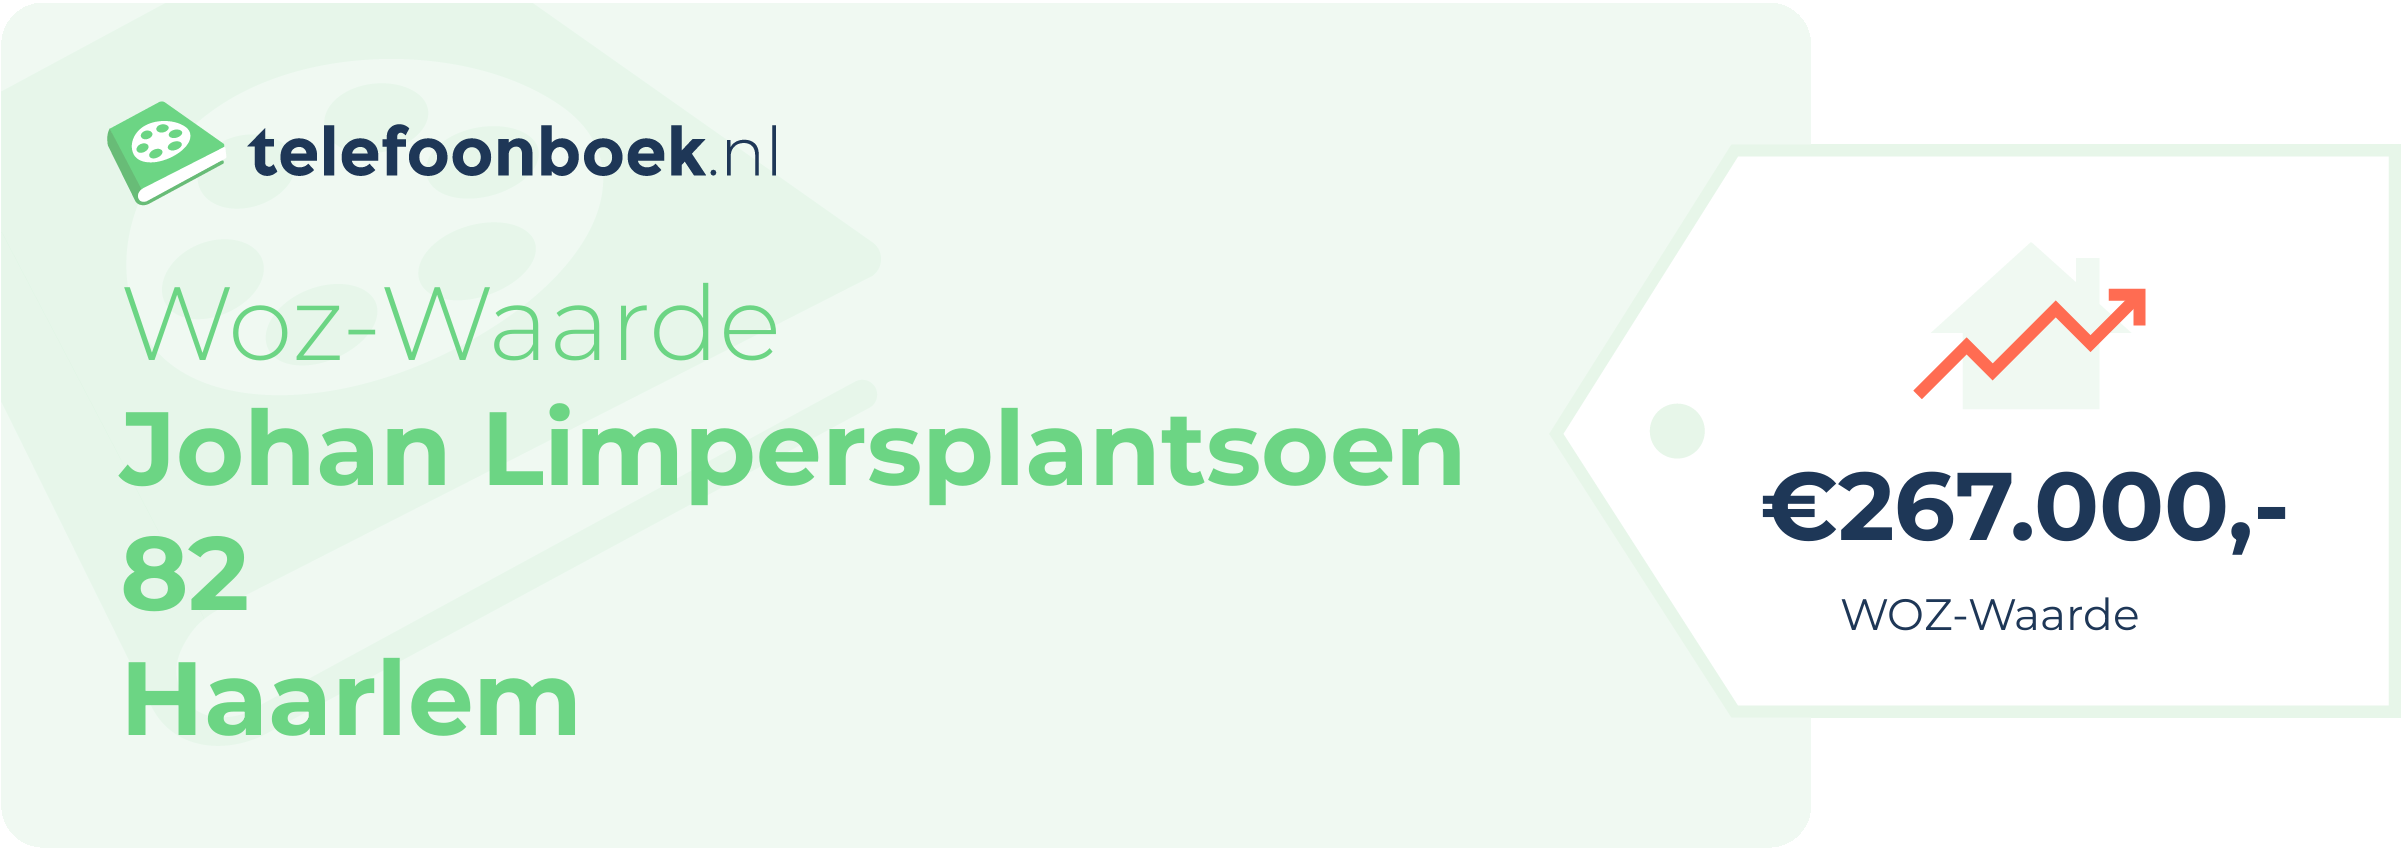 WOZ-waarde Johan Limpersplantsoen 82 Haarlem